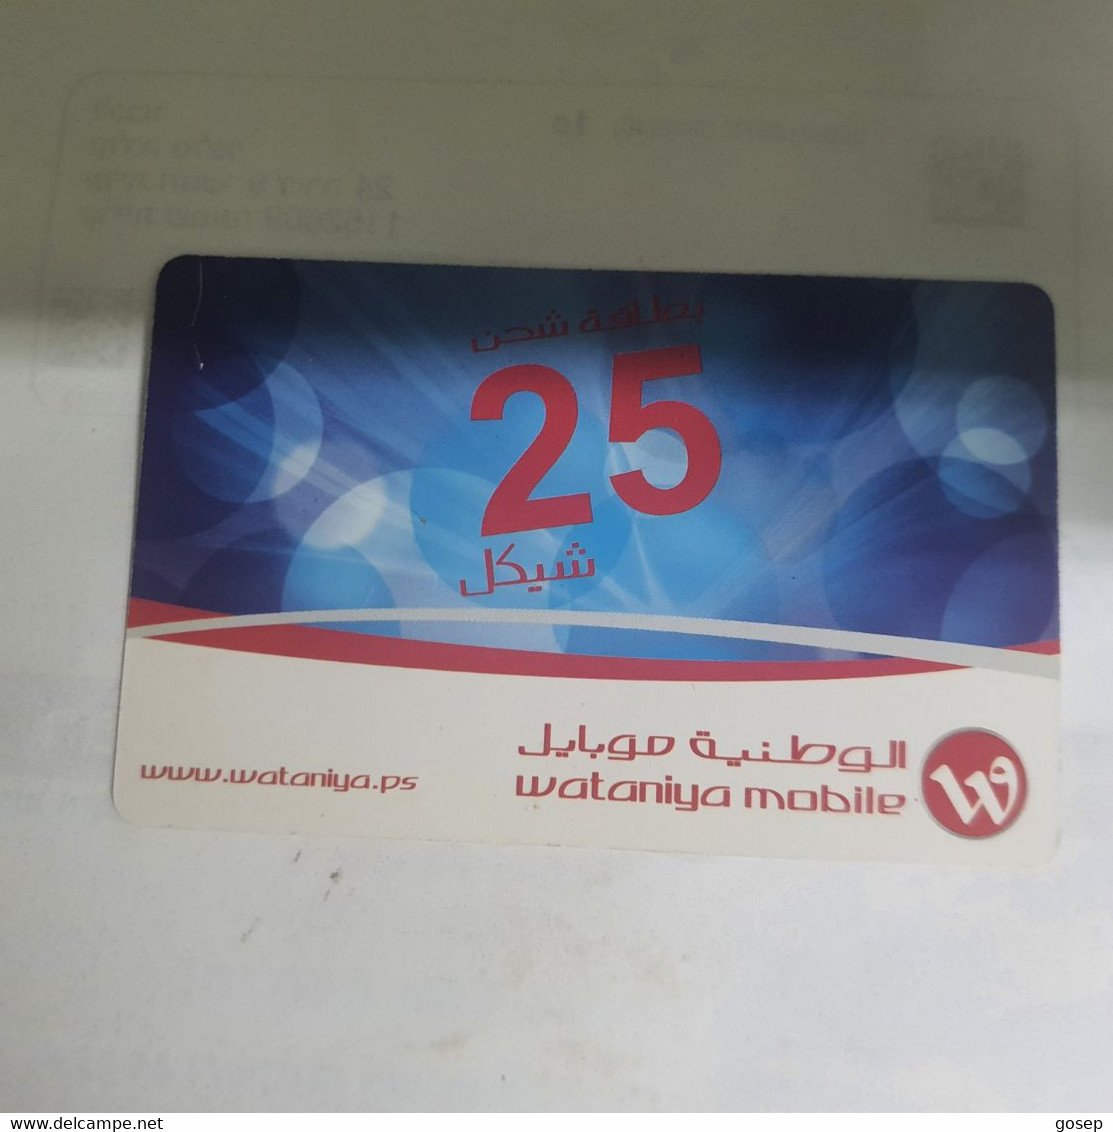 PALESTINE-(PS-WAT-REF-0002B)-Mobile 25-(371)-(1355-2370-0068-1731)-(1/4/2014)used Card+1prepiad Free - Palestine